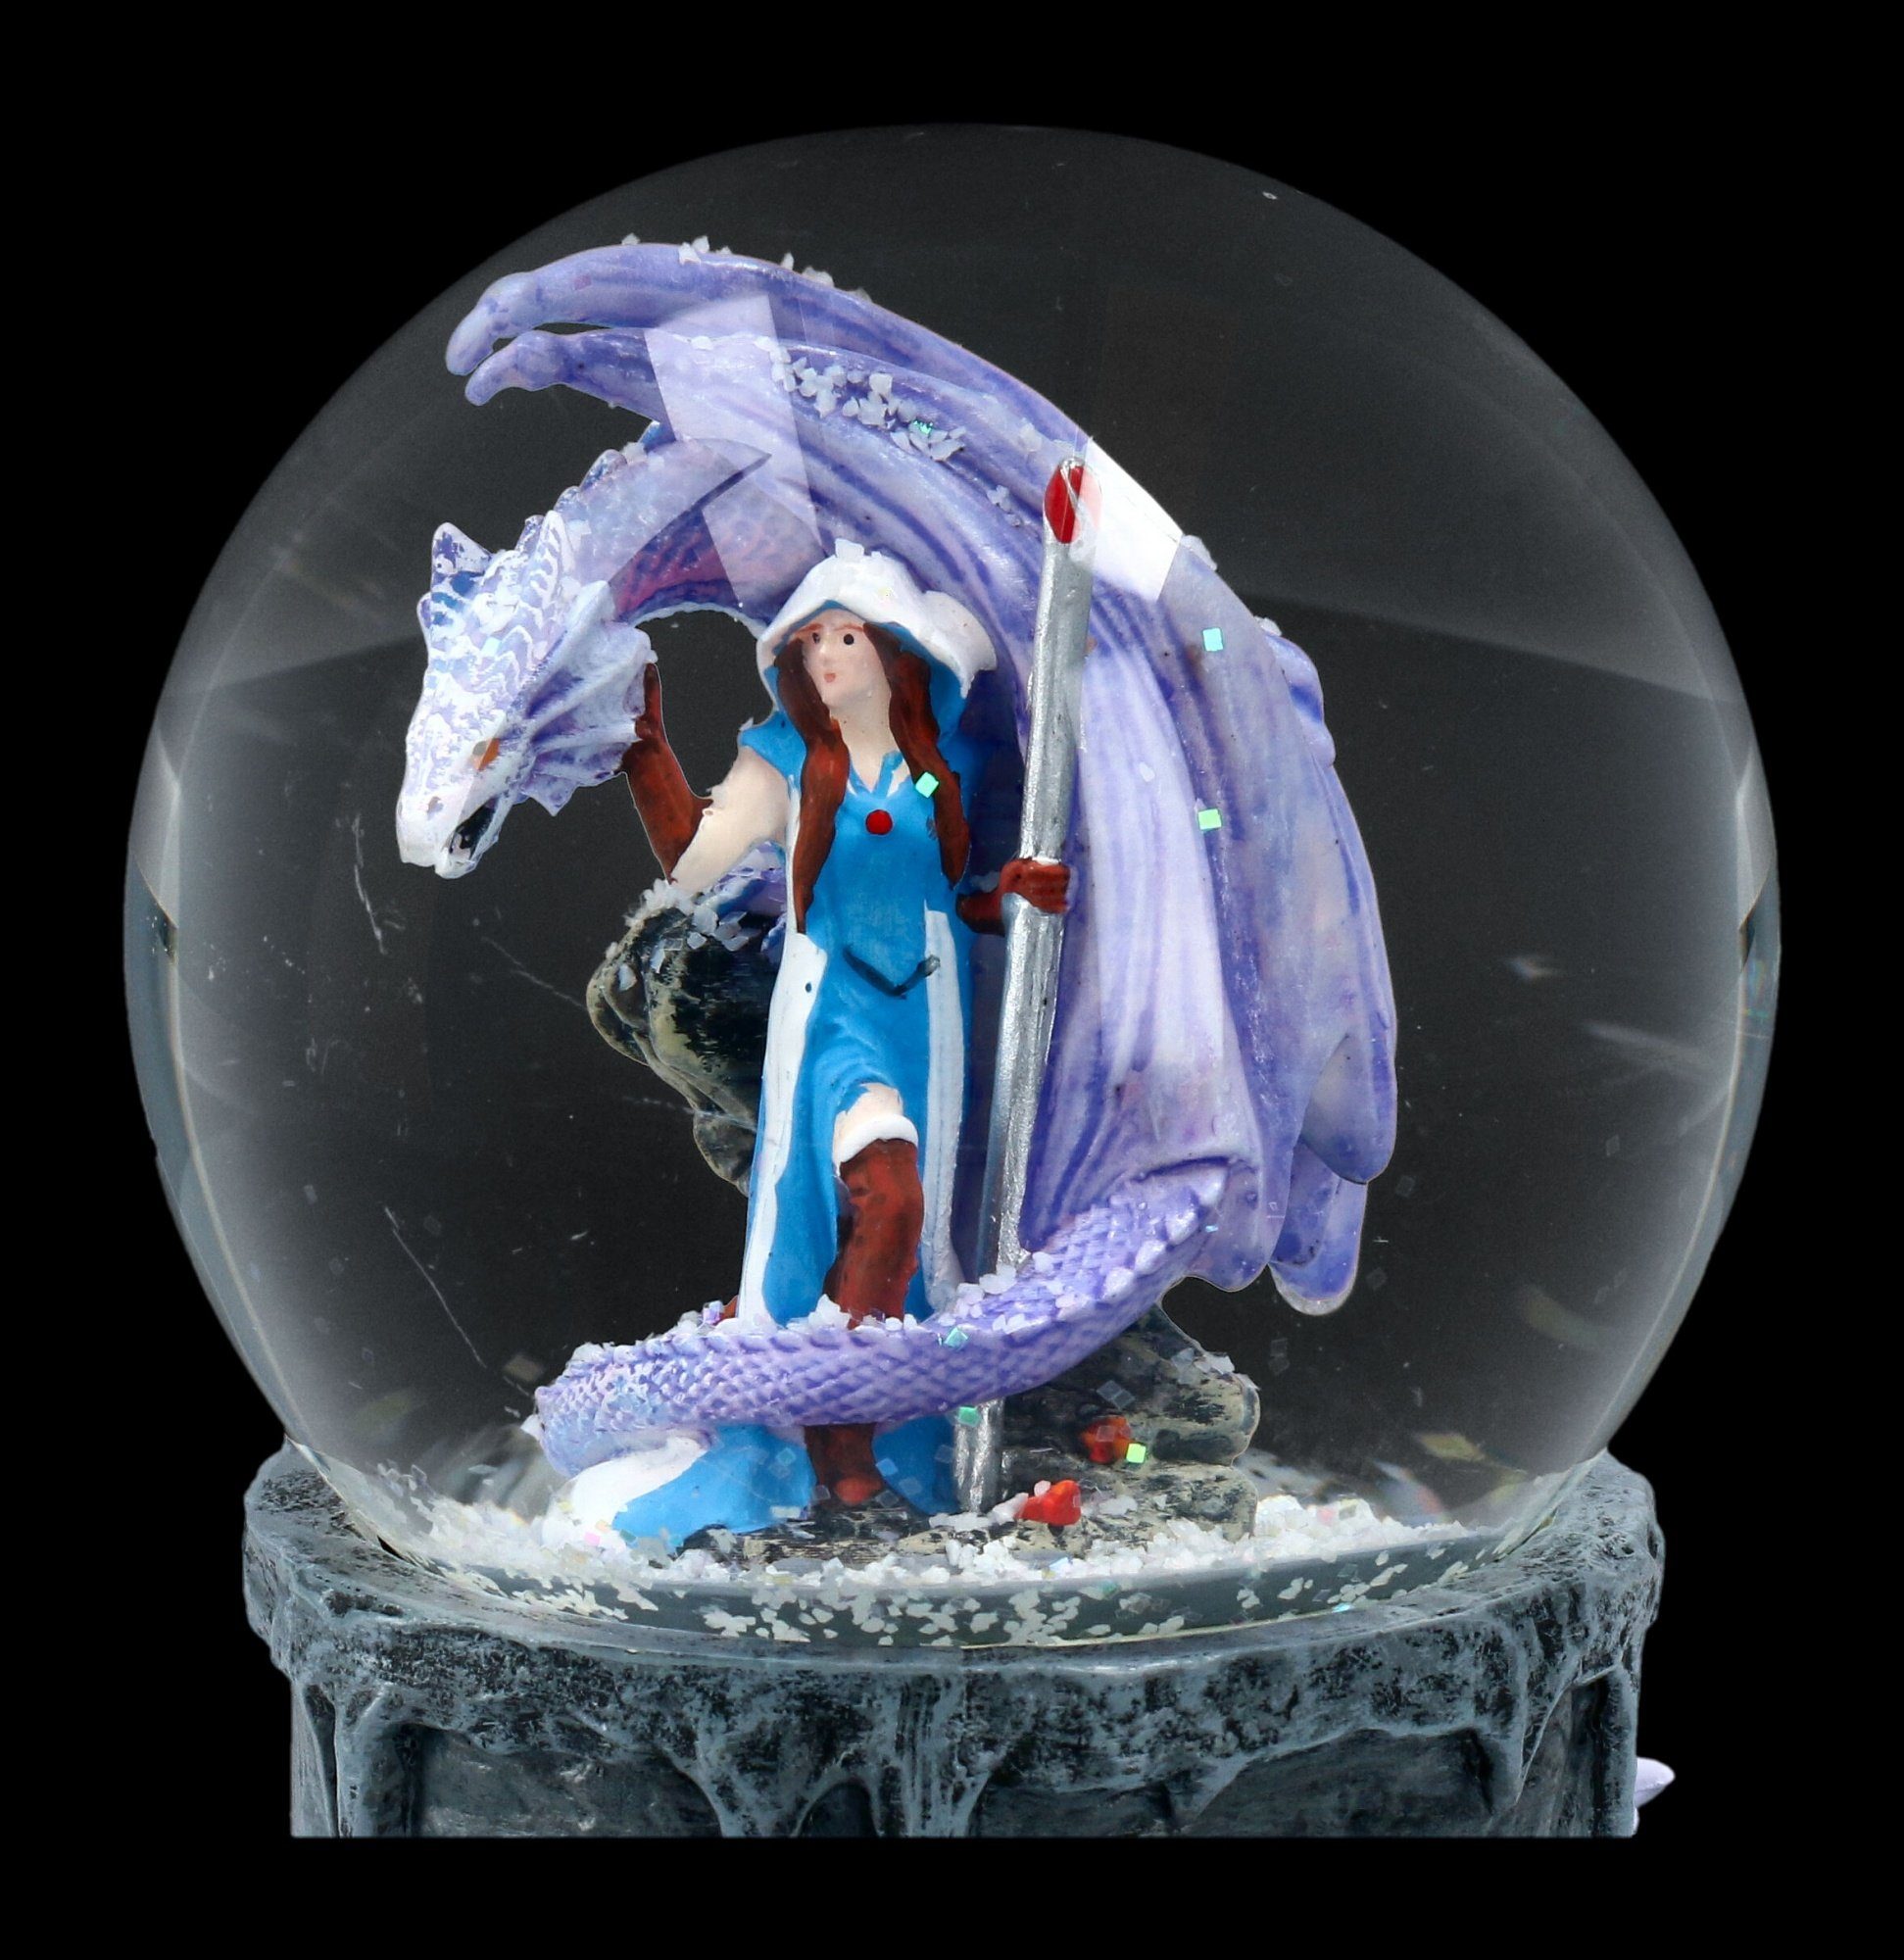 Dragon Dekoration Shop Drache Fantasy Figuren Anne - Stokes Mage GmbH - Schneekugel Schneekugel -